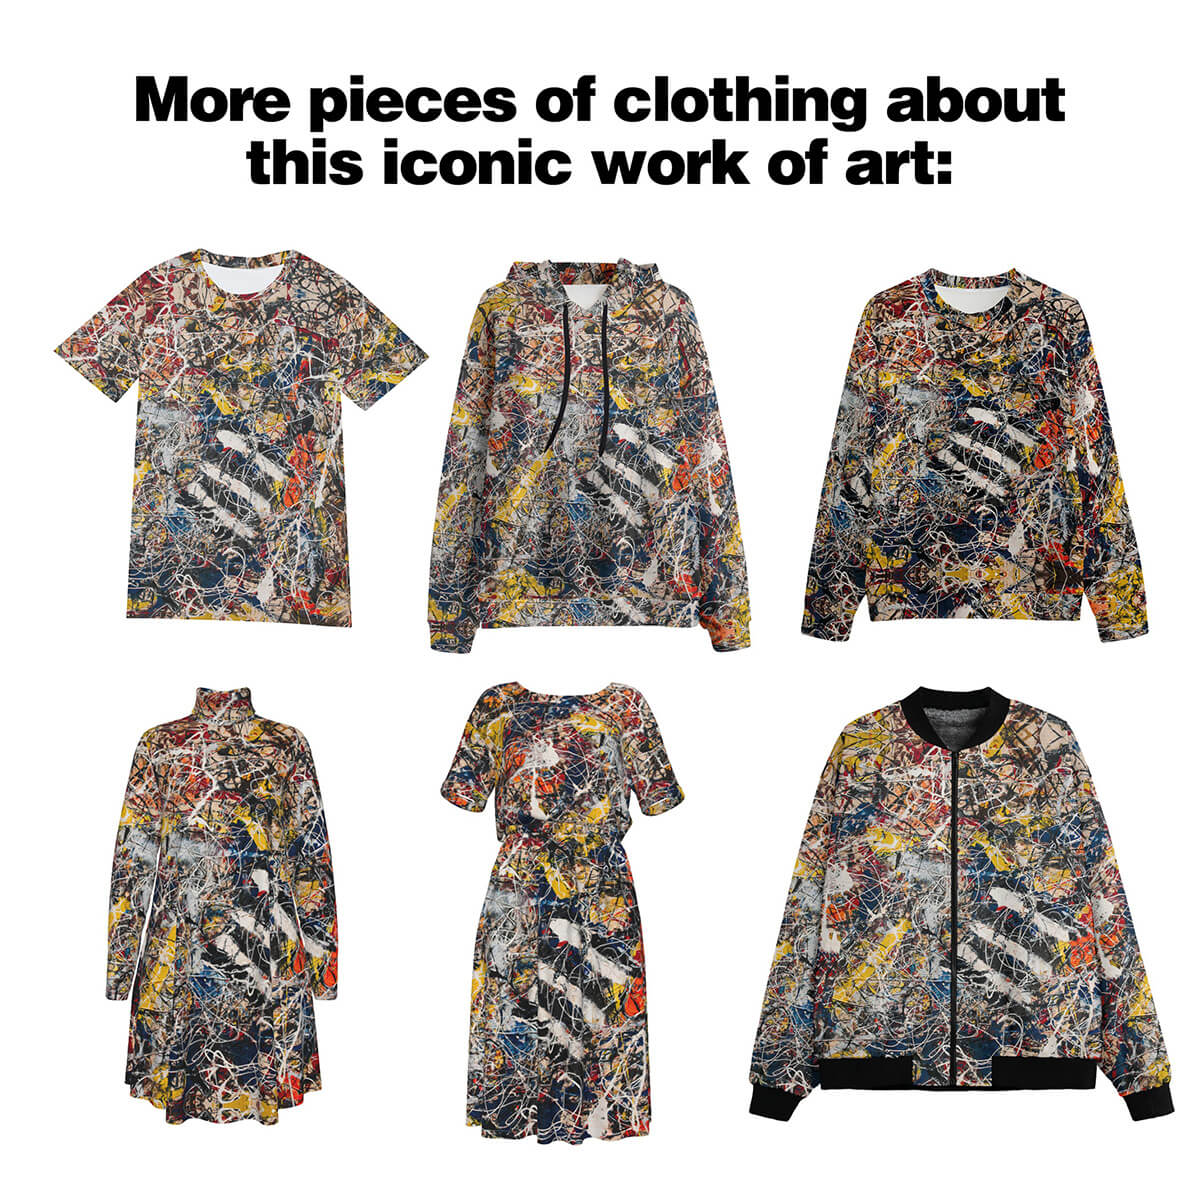 Dámske sako číslo 17A od Jacksona Pollocka